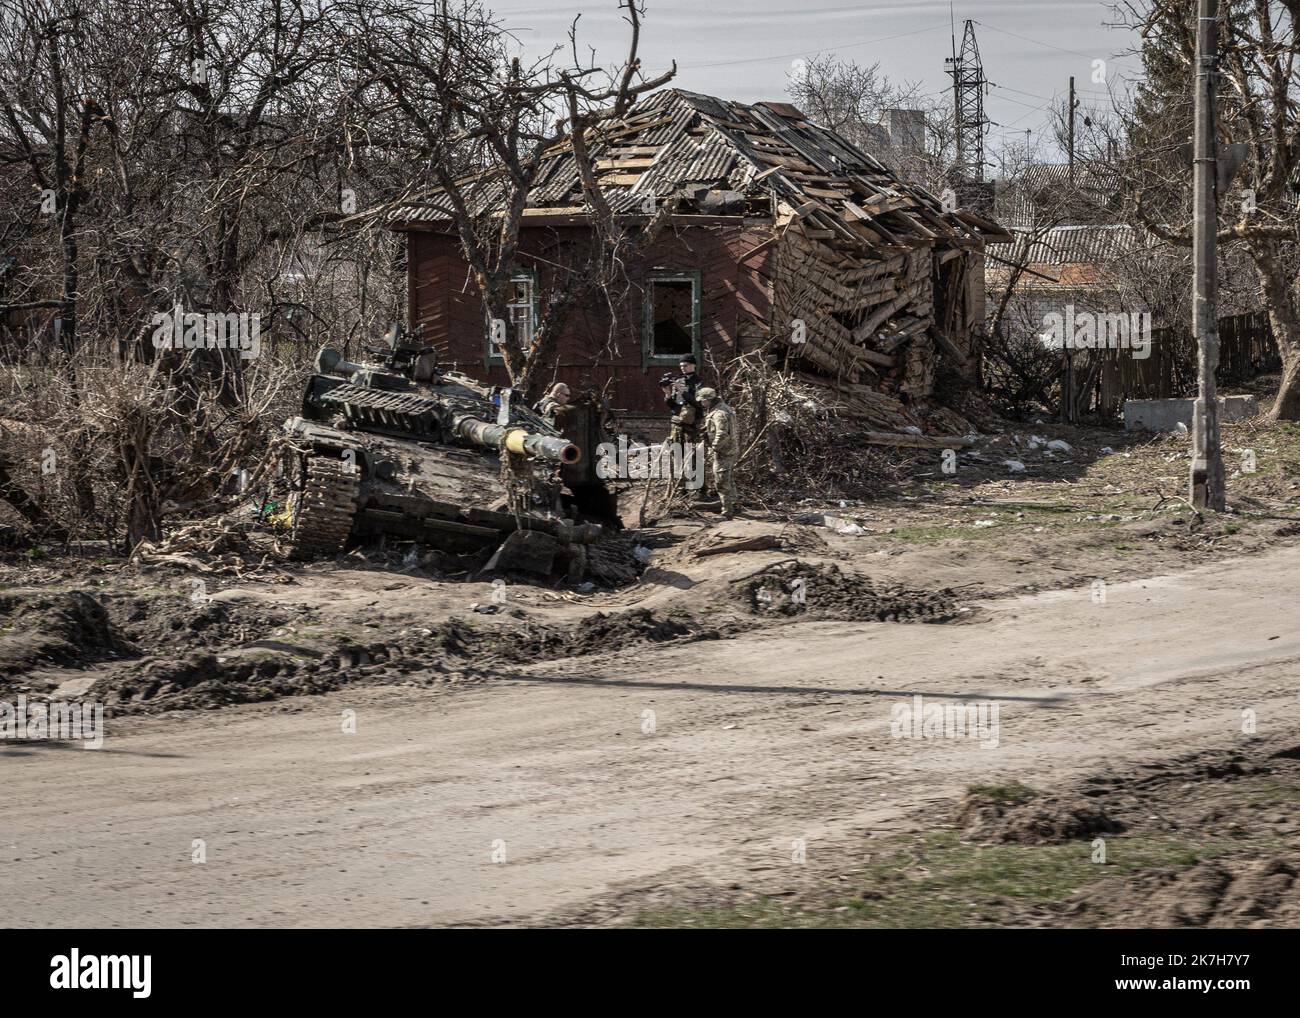 ©Sadak Souici / le Pictorium/MAXPPP - Tchernihiv 15/04/2022 Sadak Souici / le Pictorium - 15/4/2022 - Ucraina / Tchernihiv - Les restes d'un Tank gisent sur le bord de la rue Shevchenka, a Tchernihiv. Tchernihiv, au nord est de Kyiv proche de la frontiere avec la bielorussie, a subit de plein fouet l'avancee russe. Bombardee de maniere intensive, les envahisseurs tenterent dix fois, en vain, d'occuper la ville. Une operation qui couta tres cher a la ville, donnant lieu a des quartiers entierement detruits, des immeubles eventres, et des vies brisees. Sion le gouvernement ukrainien, les attaquaces Foto Stock